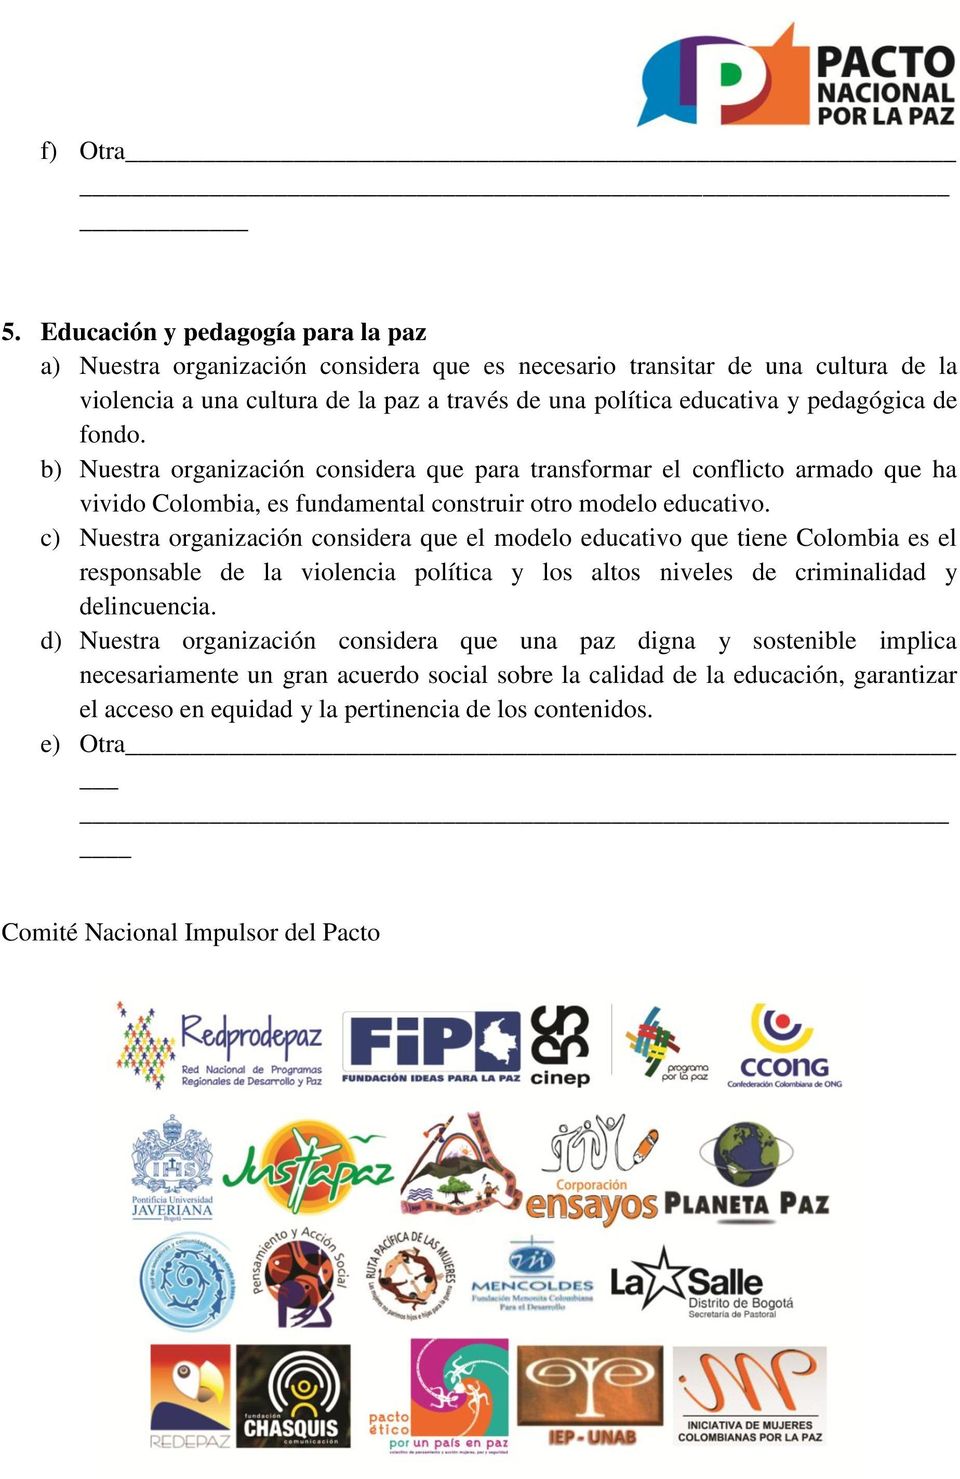 pedagógica de fondo. b) Nuestra organización considera que para transformar el conflicto armado que ha vivido Colombia, es fundamental construir otro modelo educativo.